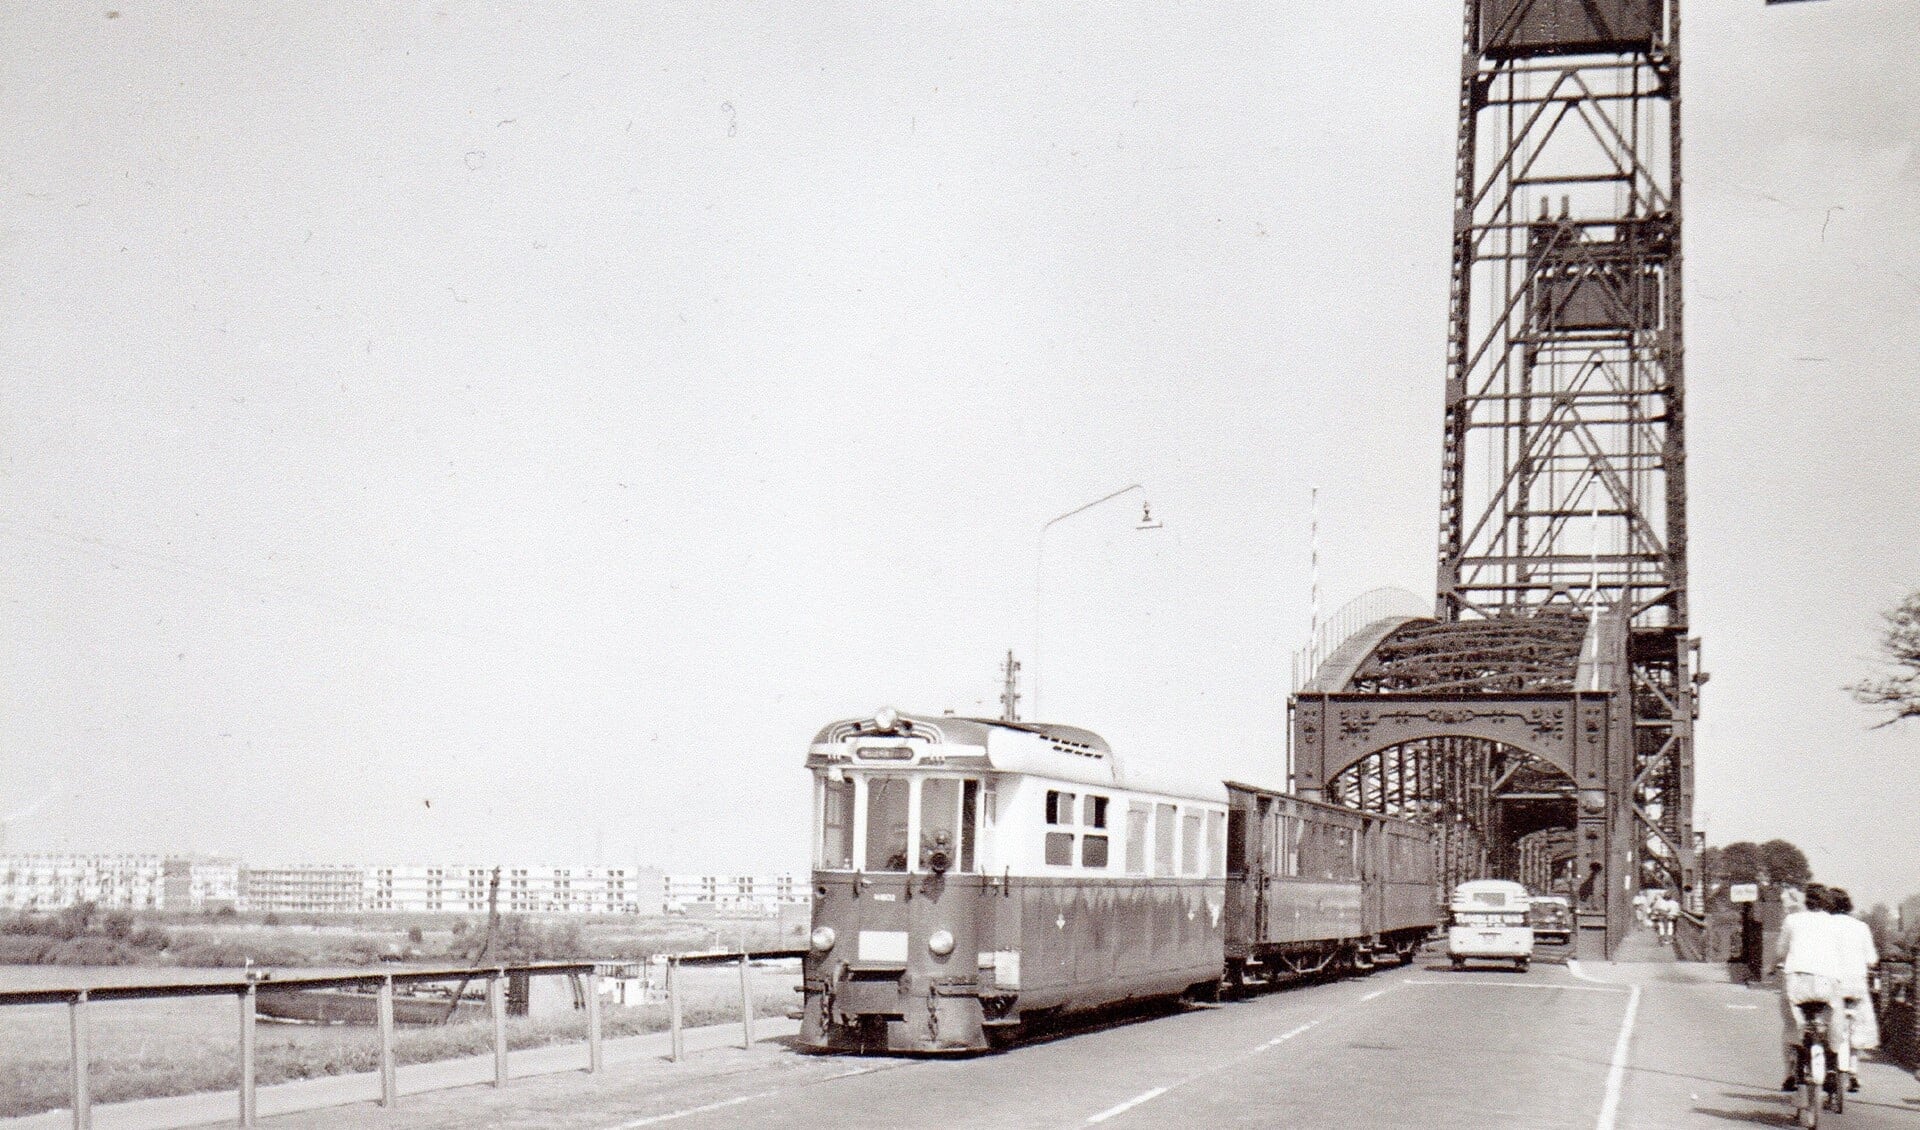 De RTM tram over de Spijkenisserbrug, 1963